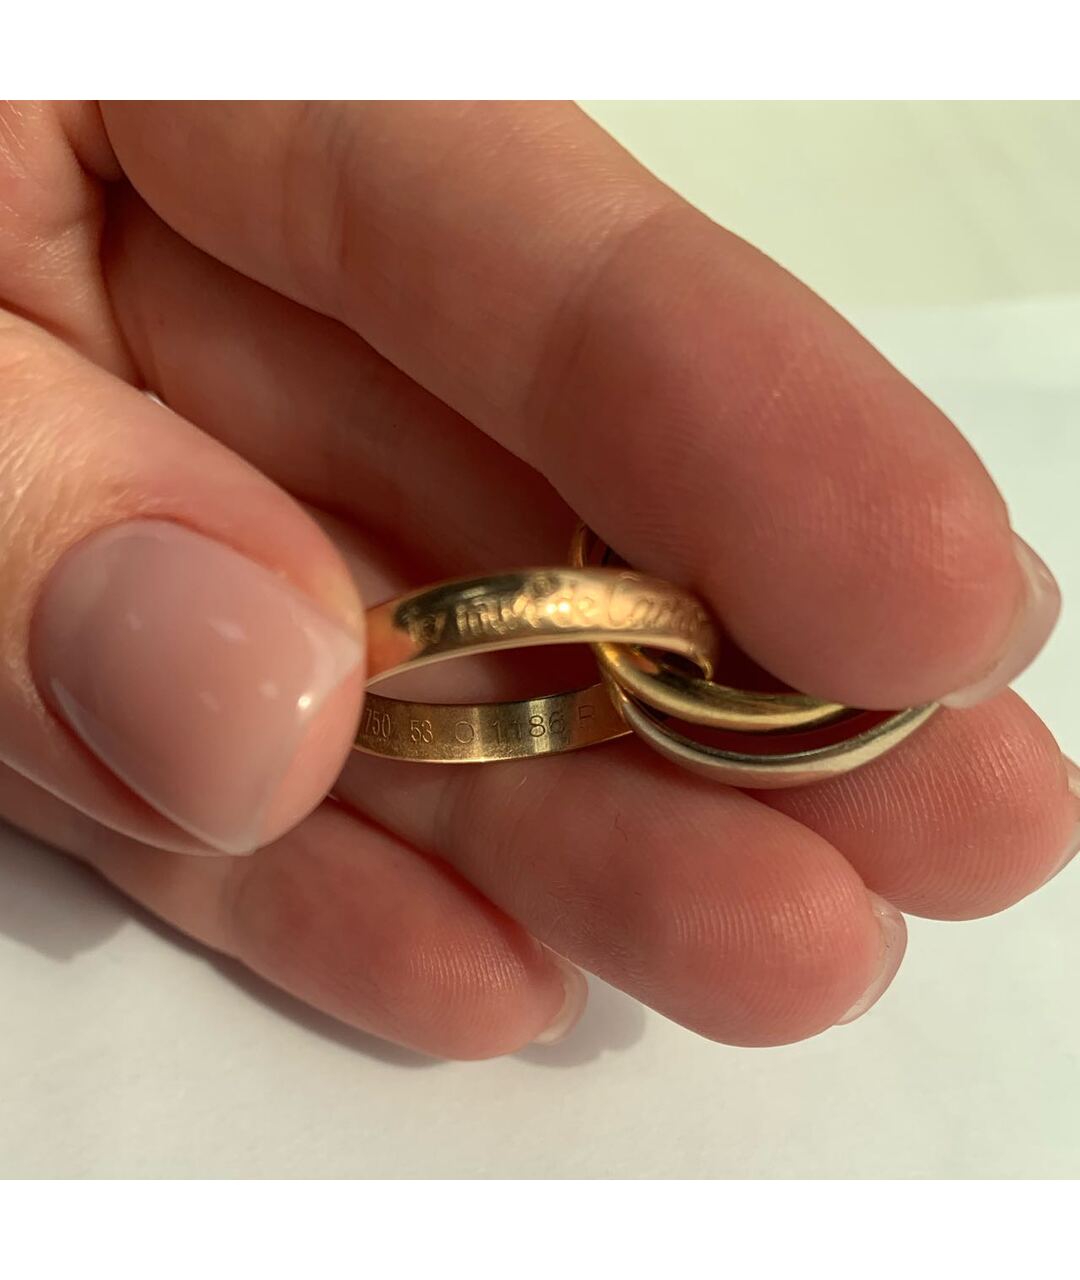 CARTIER Золотое кольцо из желтого золота, фото 5